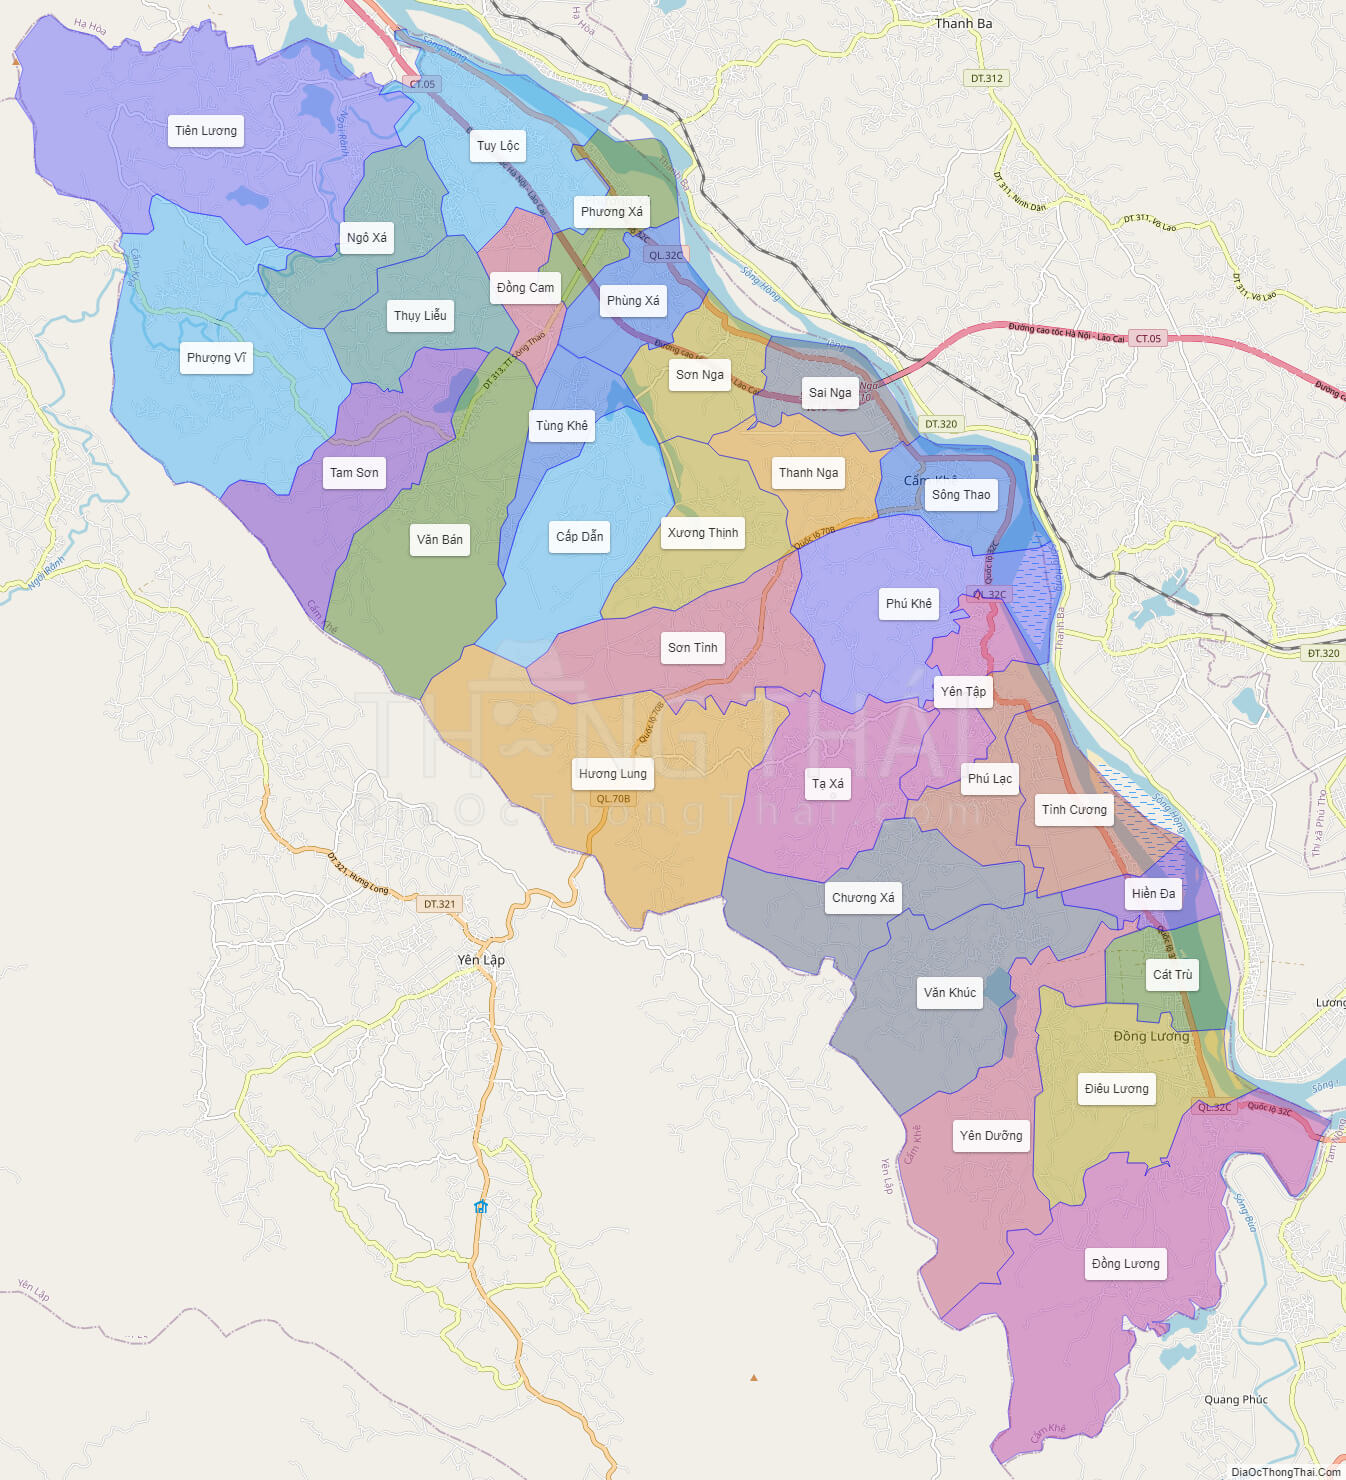 Bản đồ huyện Cẩm Khê Phú Thọ như thế nào? (What does the map of Cam Khe district, Phu Tho Province look like?)